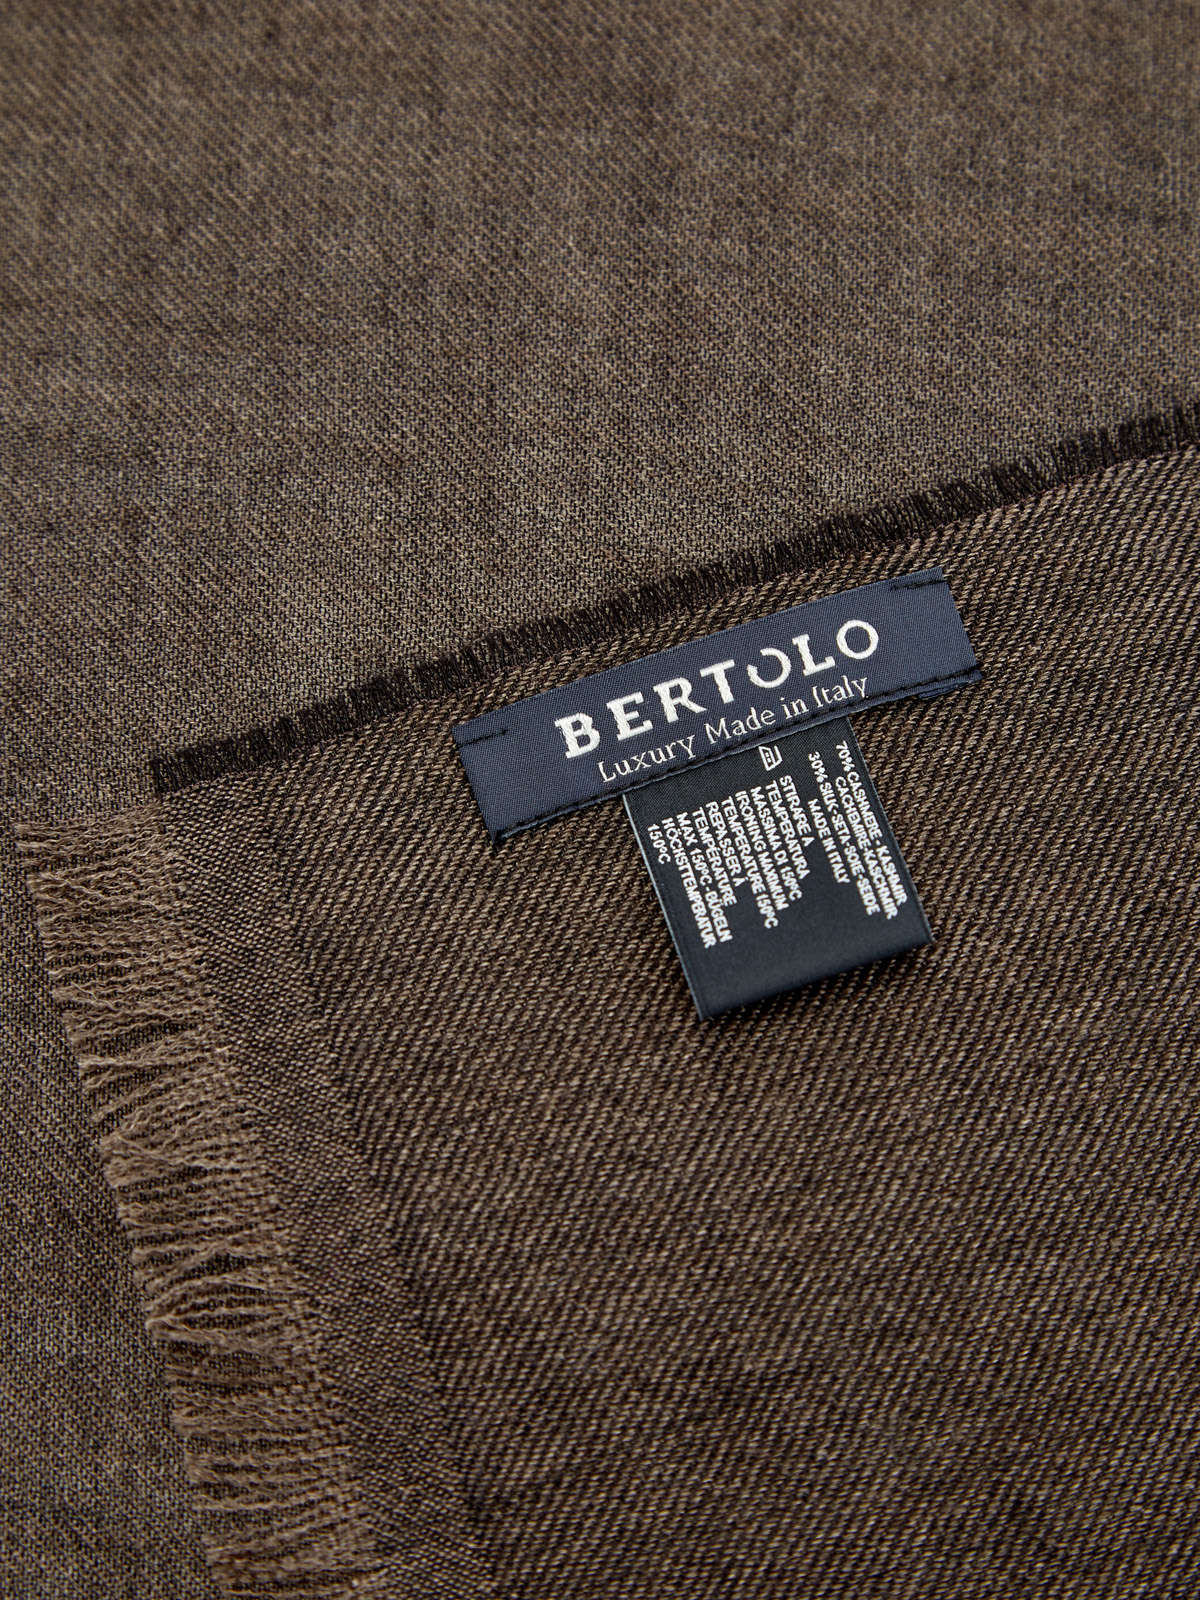 Кашемировый шарф с волокнами шелка в коричневой гамме BERTOLO CASHMERE, цвет коричневый, размер 58 - фото 3